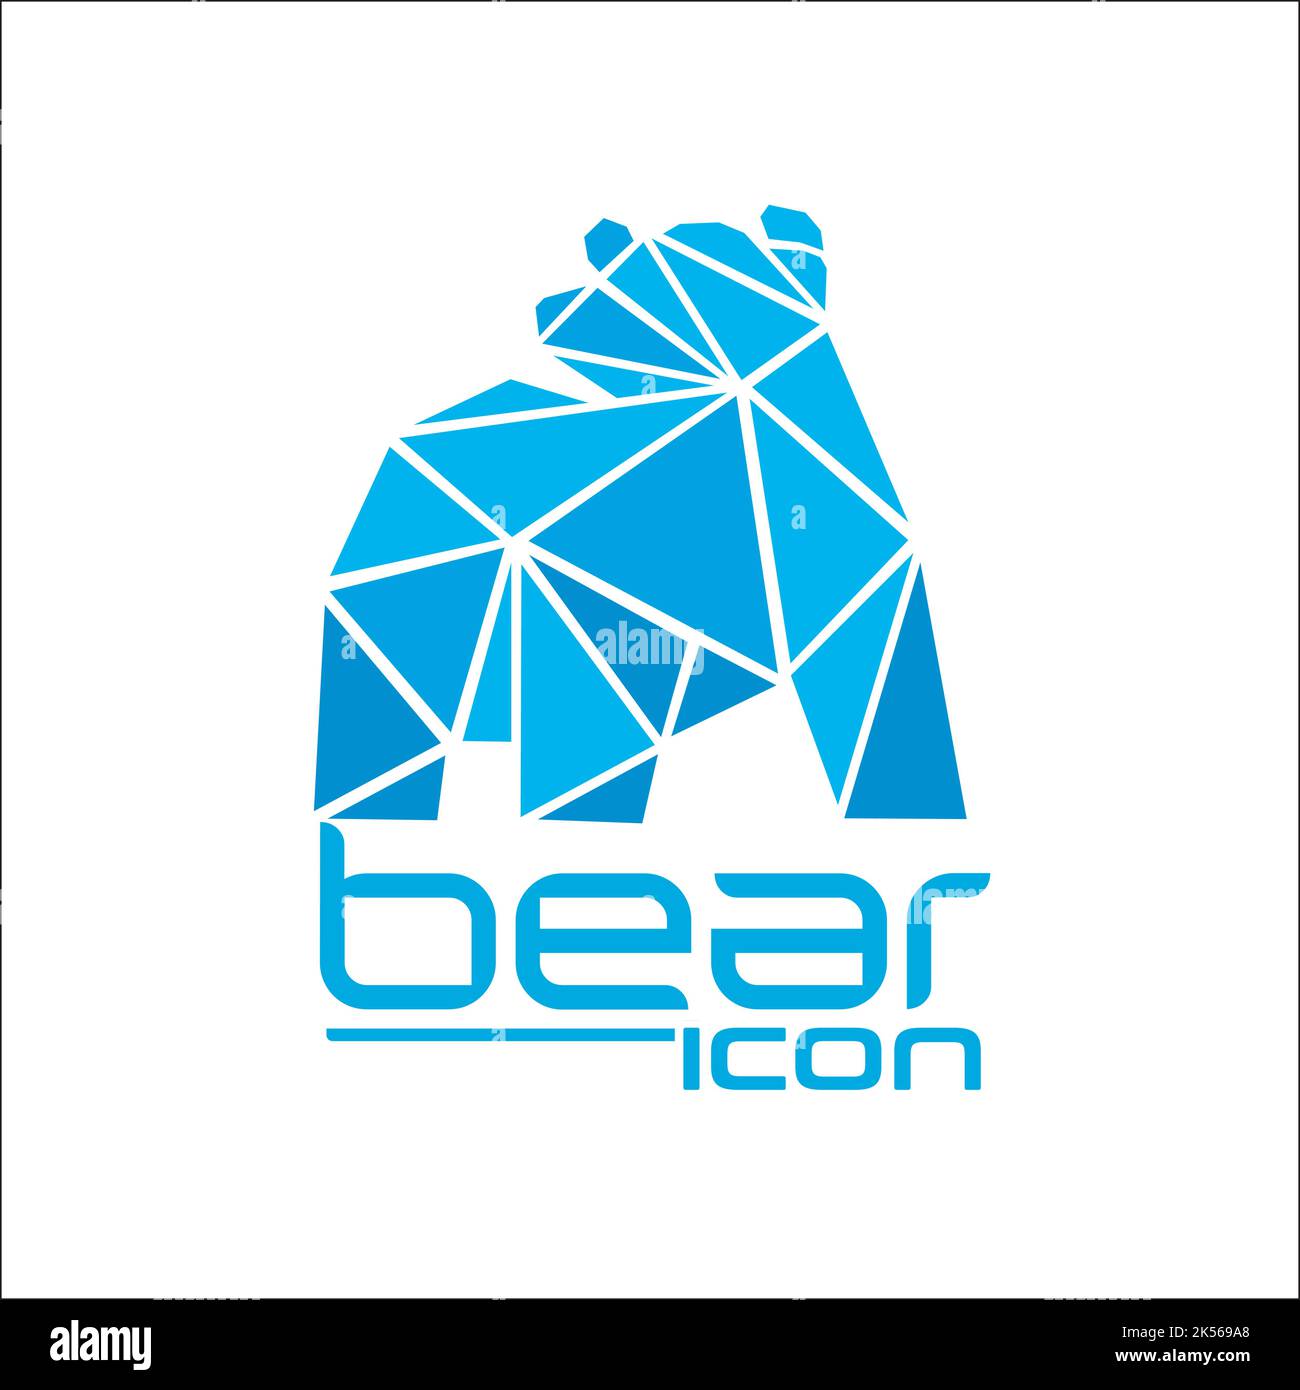 bear icon / exclusive logo design inspiration Stock Vector